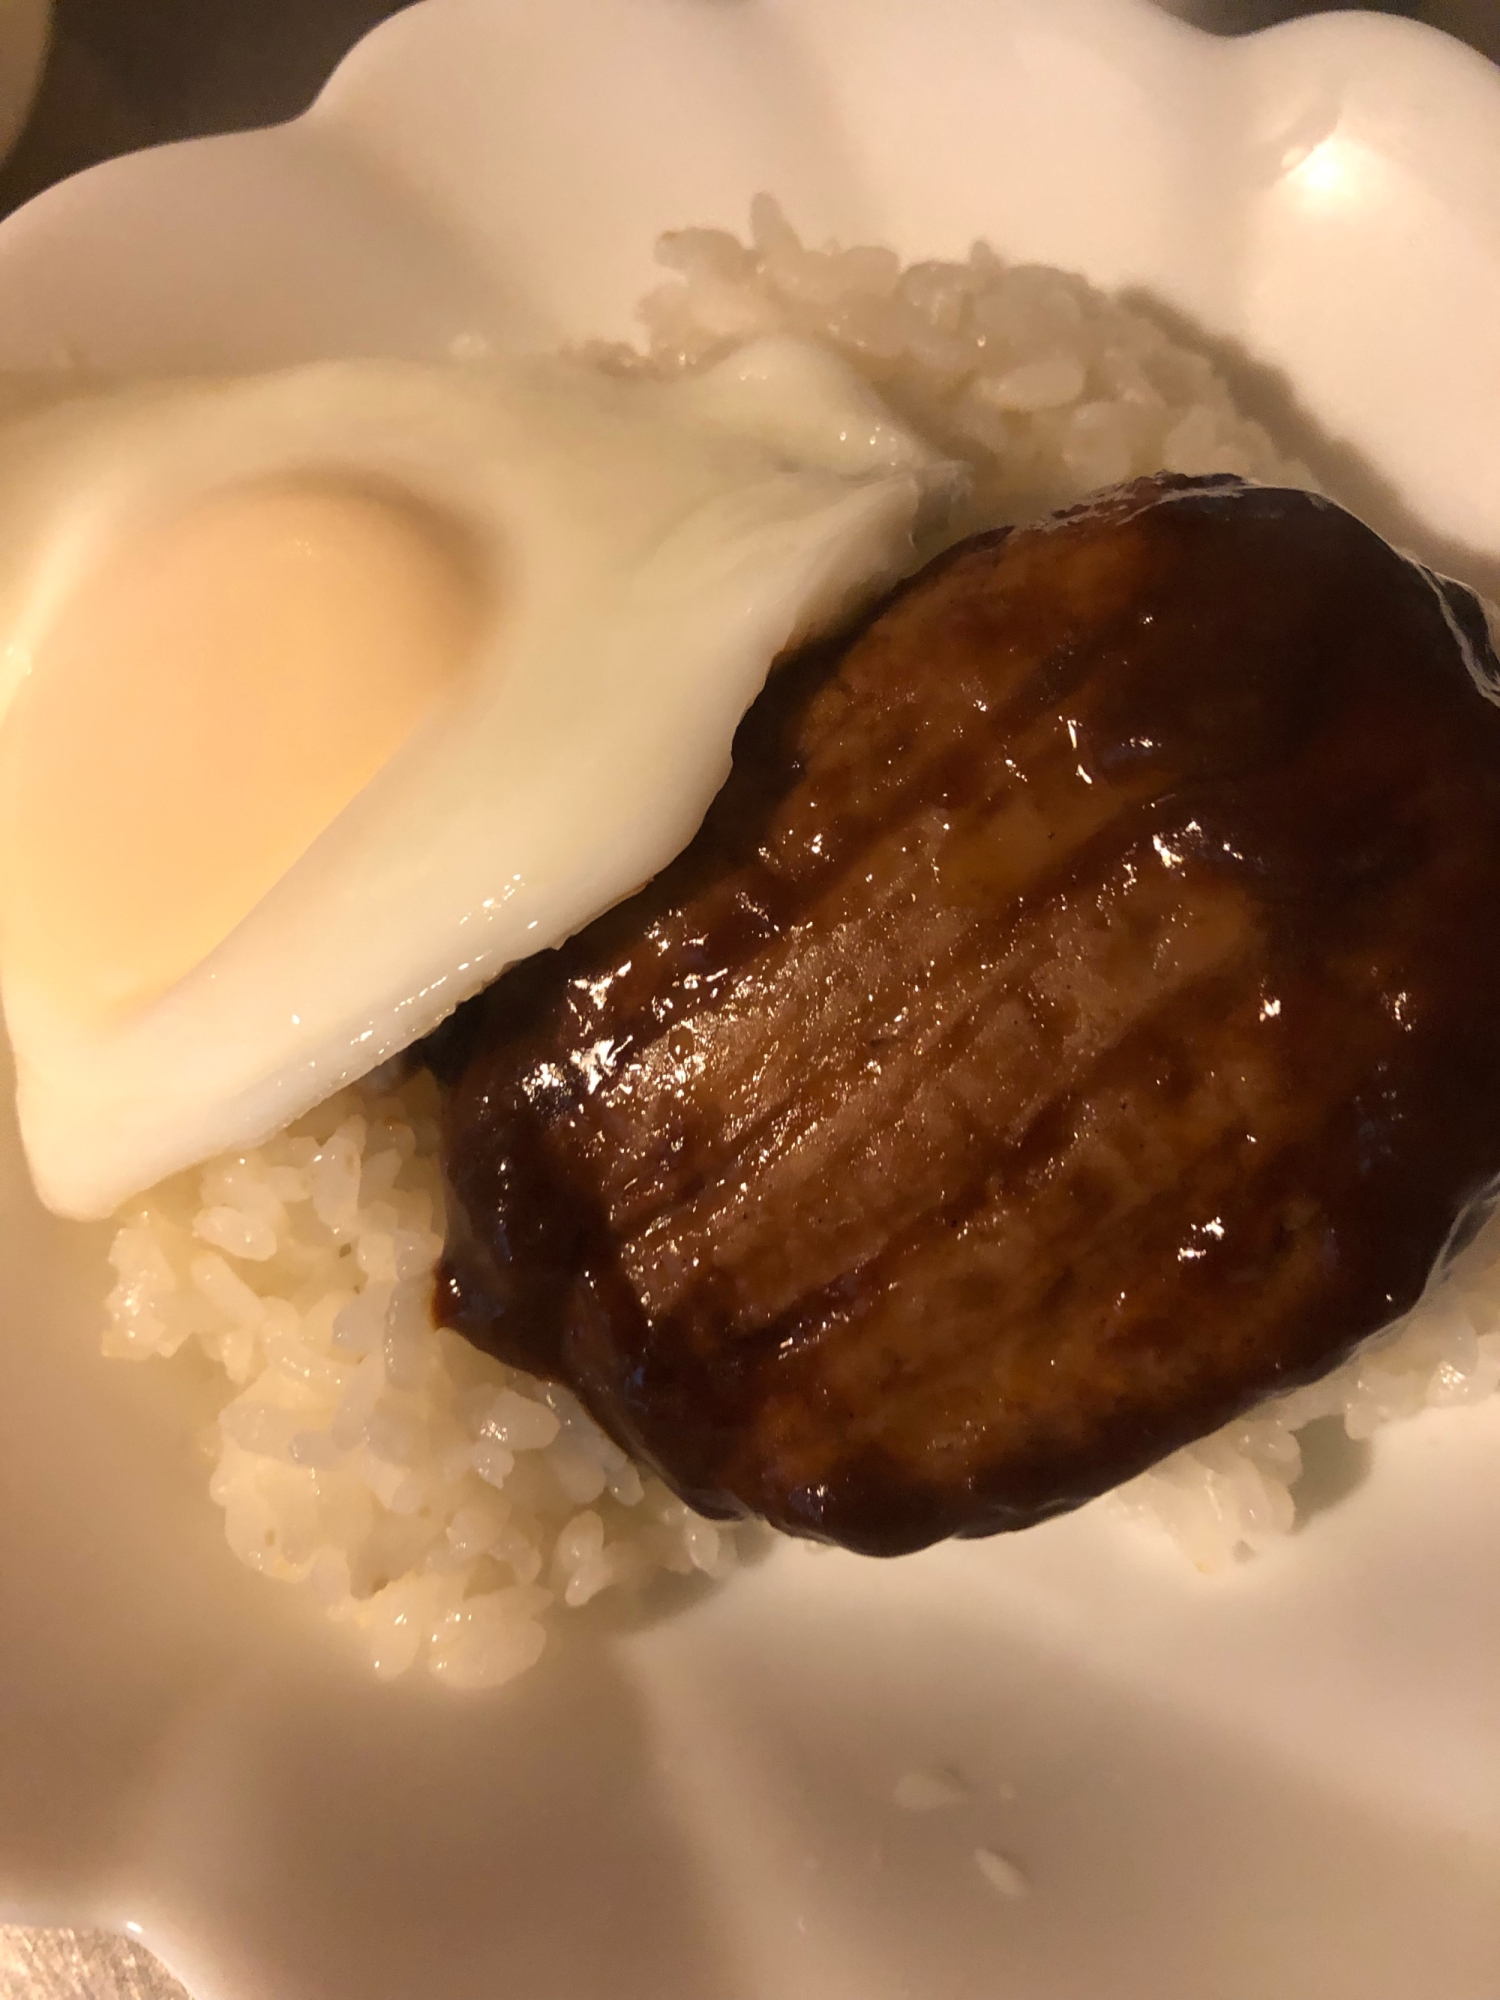 ロコモコ風丼